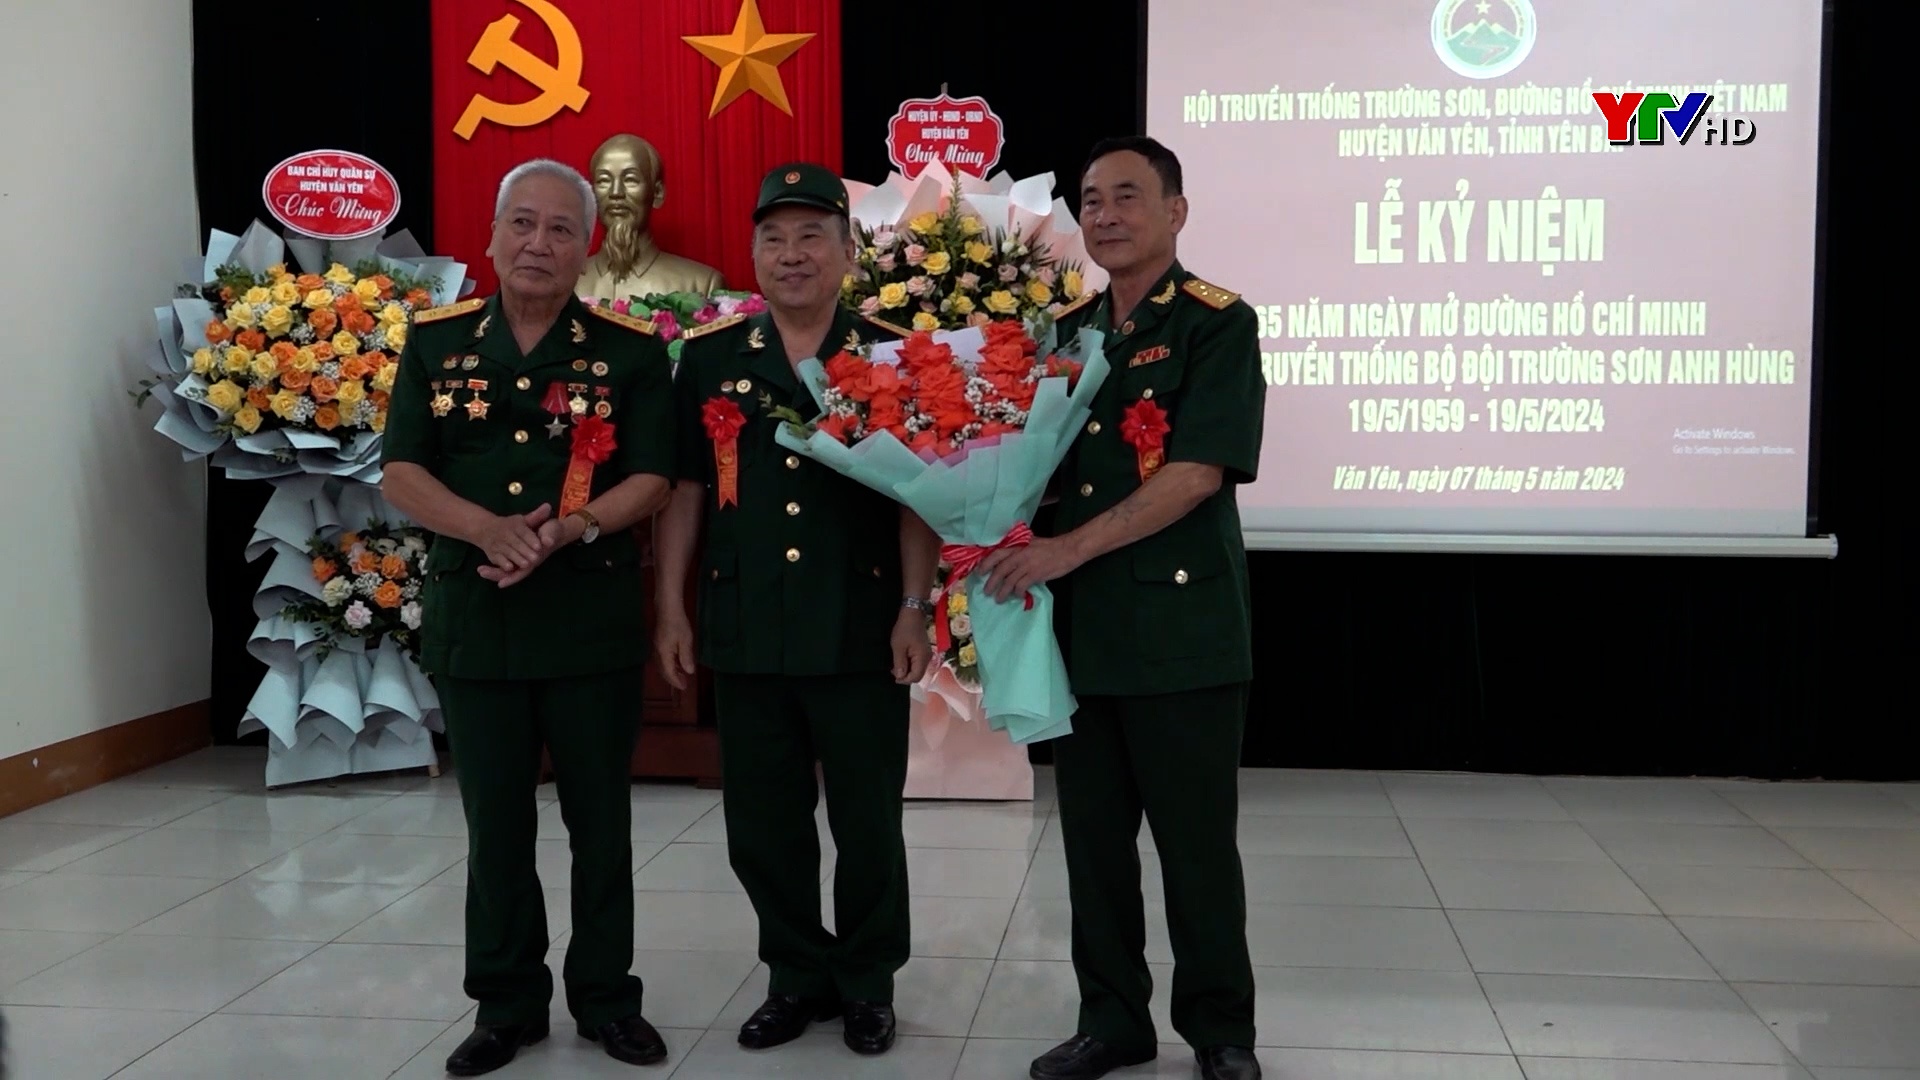 Văn Yên: Kỷ niệm 65 năm Ngày mở đường Hồ Chí Minh - Ngày truyền thống bộ đội Trường Sơn